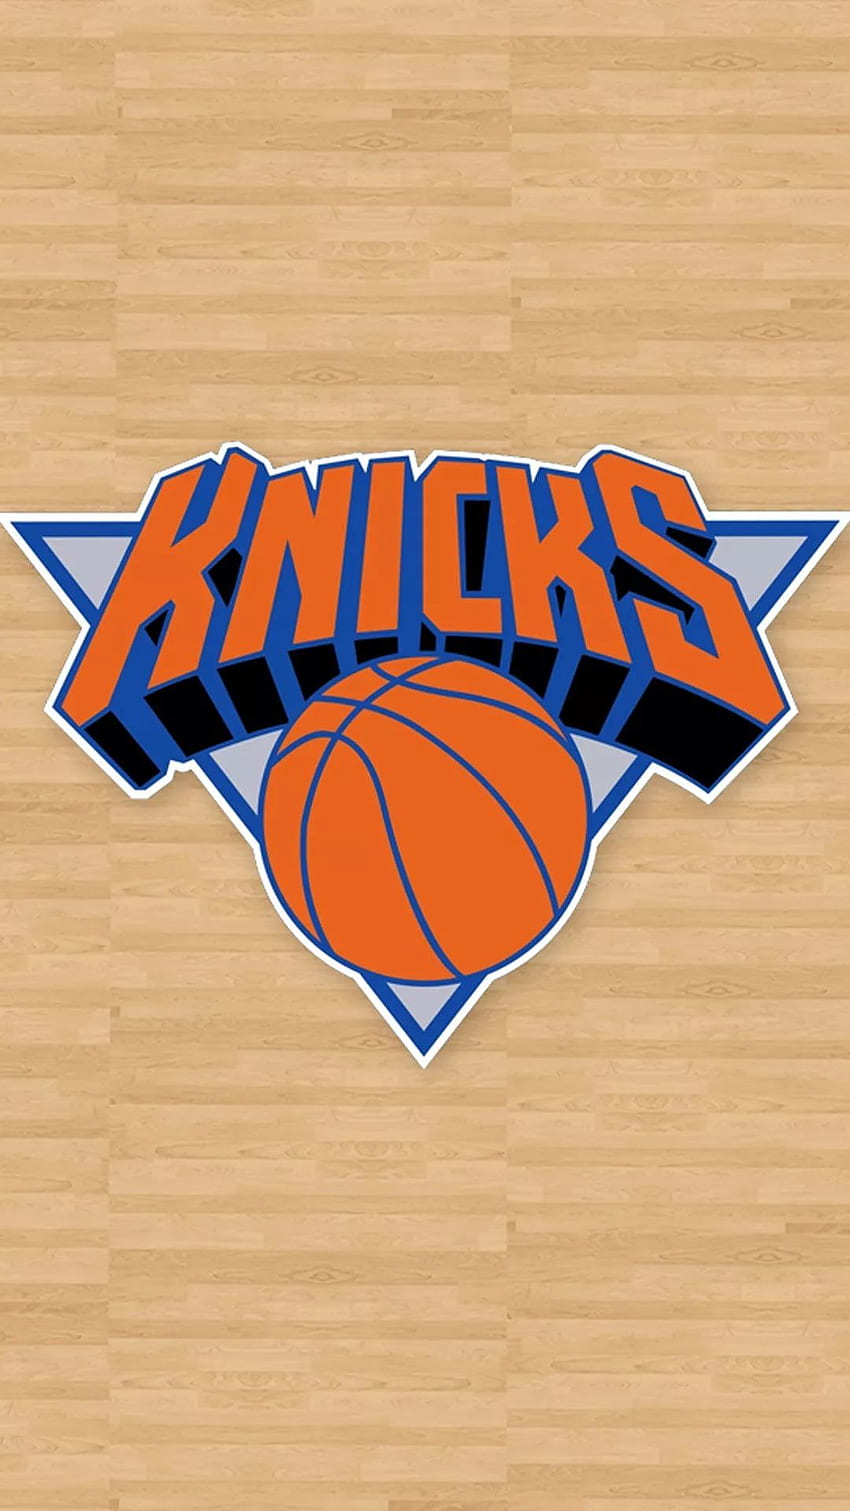 New York Knicks Wallpaper by lucasitodesign on DeviantArt